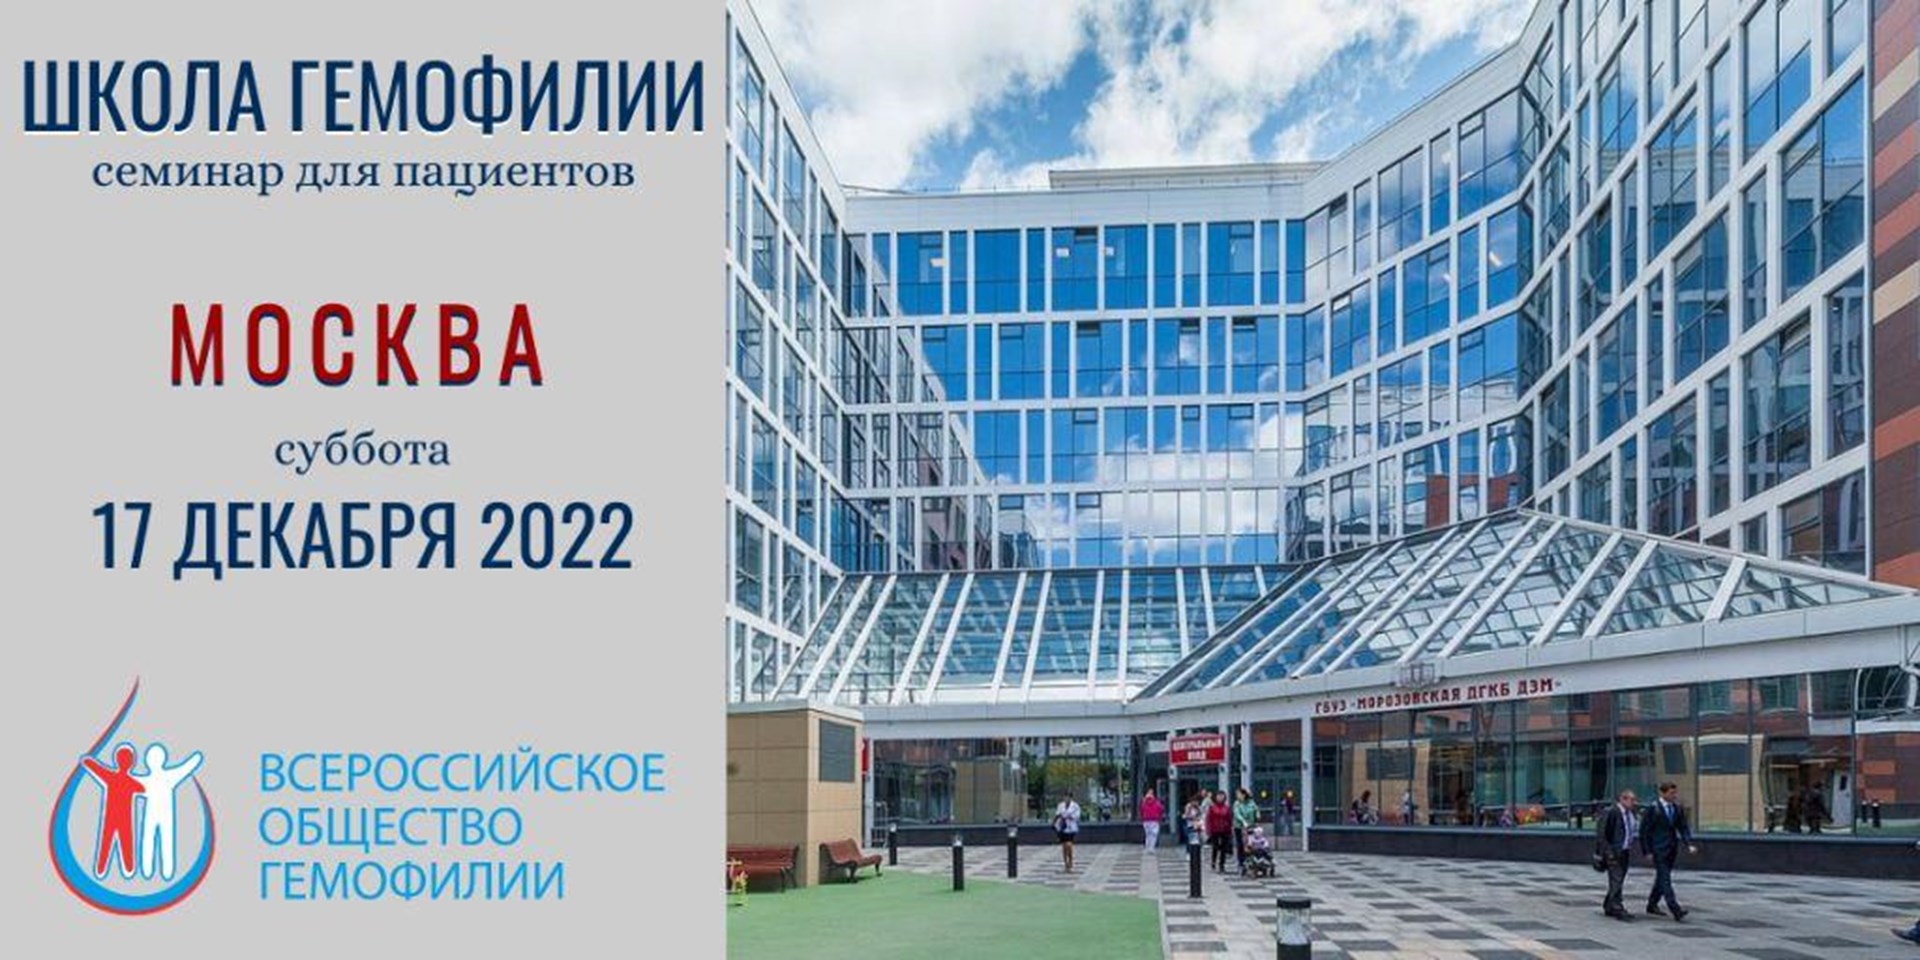 17 декабря 2022 в Москве состоится Школа гемофилии